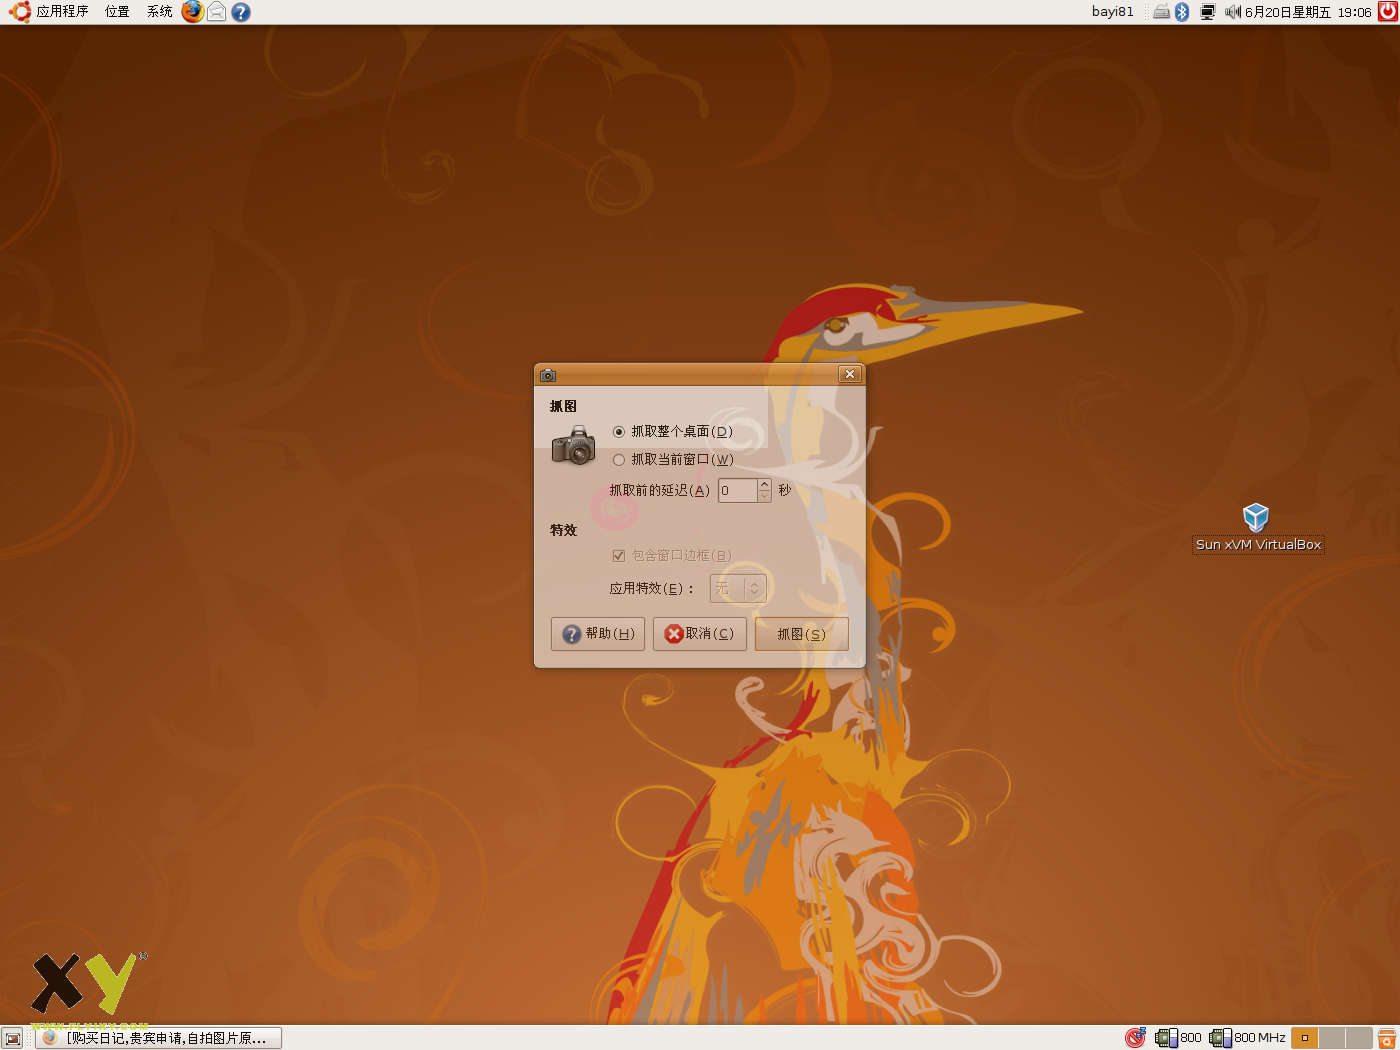 T61 AW2 - Ubuntu 8.04